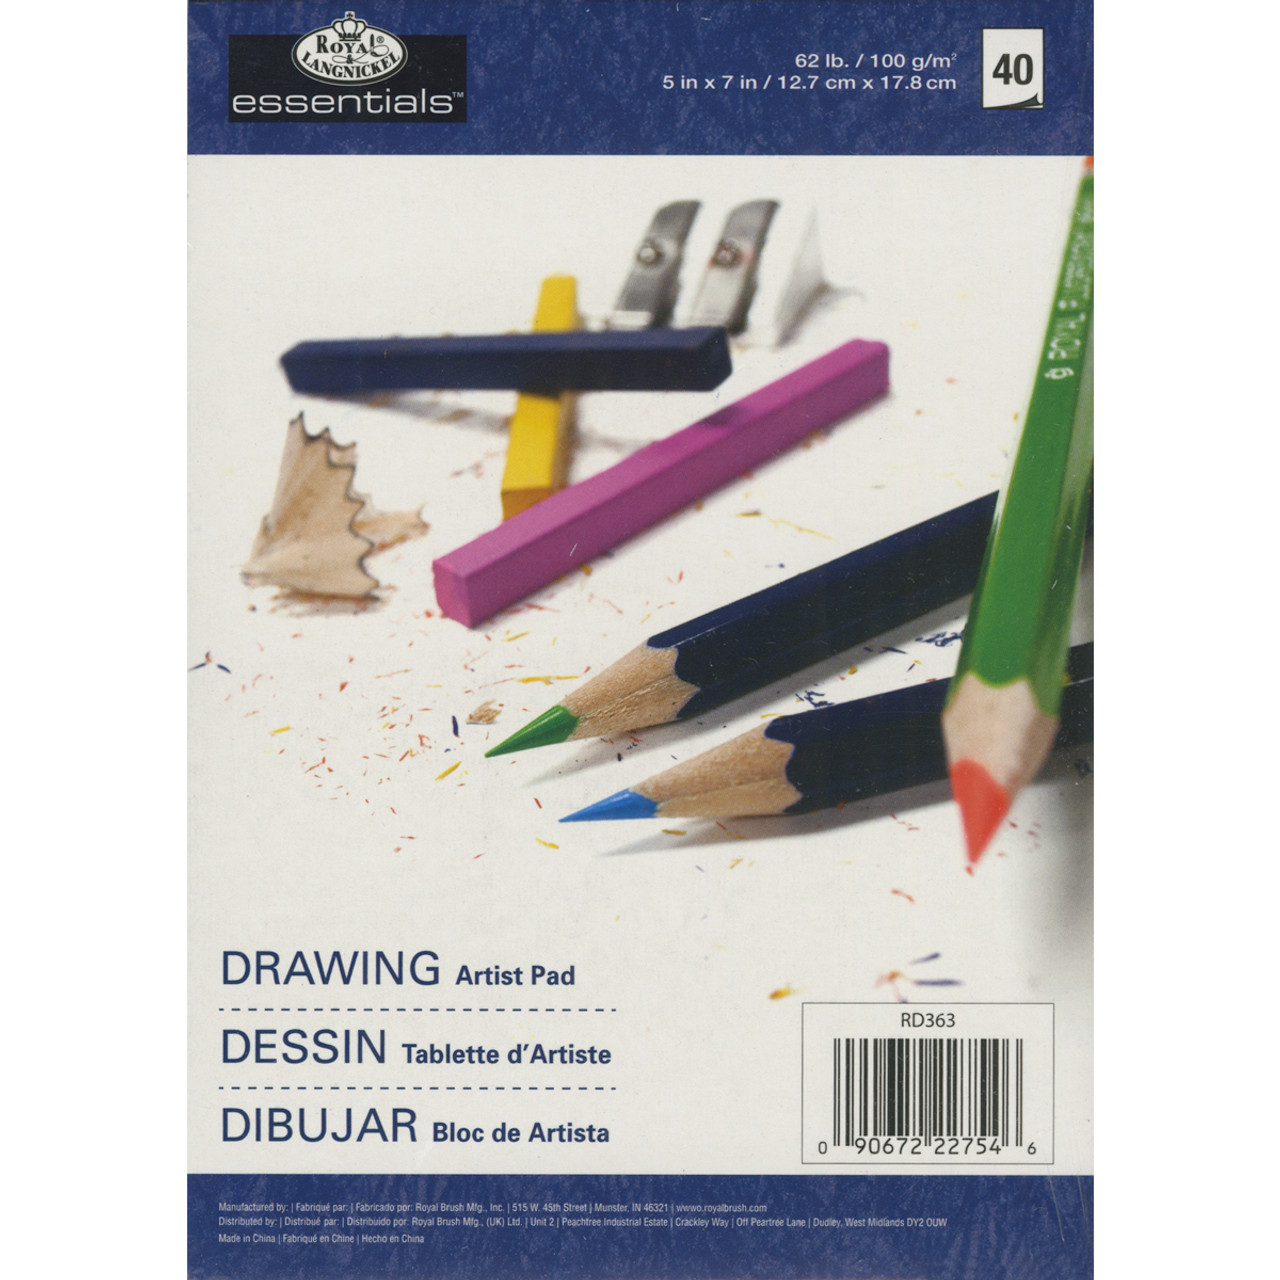 Essentials Watercolor Artist Paper Pad 5x7 15 Sheets